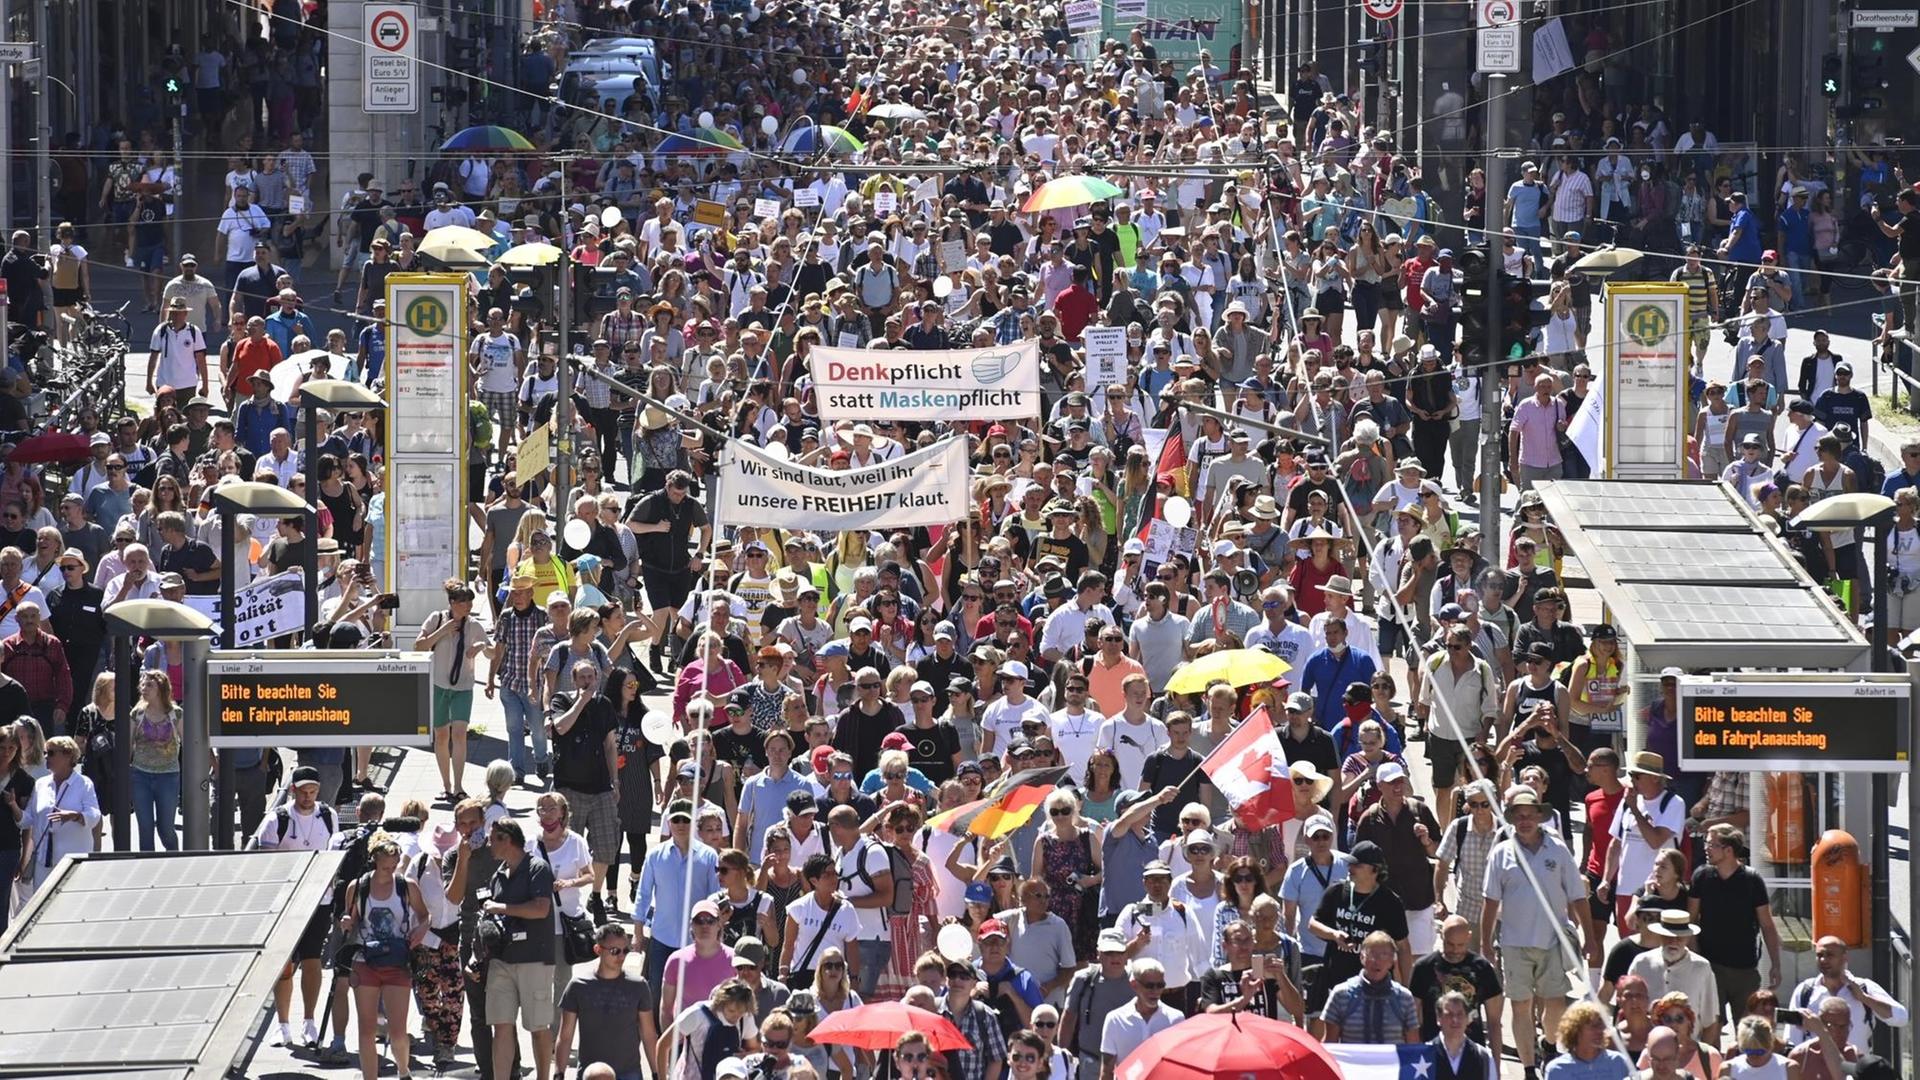 Eine Menschenmenge zieht durch eine Straße, auf einem Transparent steht: "Denkpflicht statt Maskenpflicht"